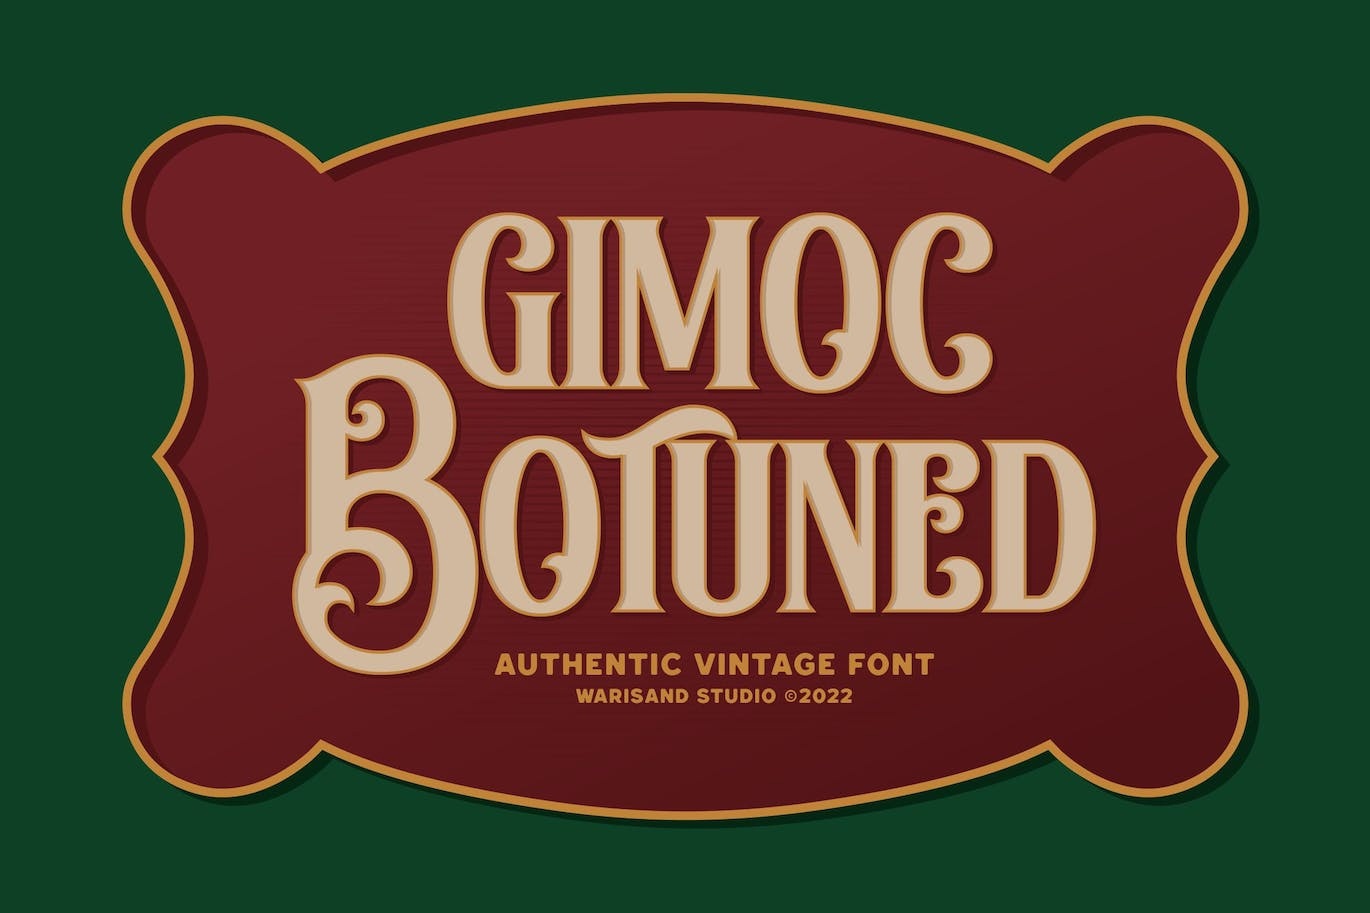 Ejemplo de fuente Gimoc Botuned Regular